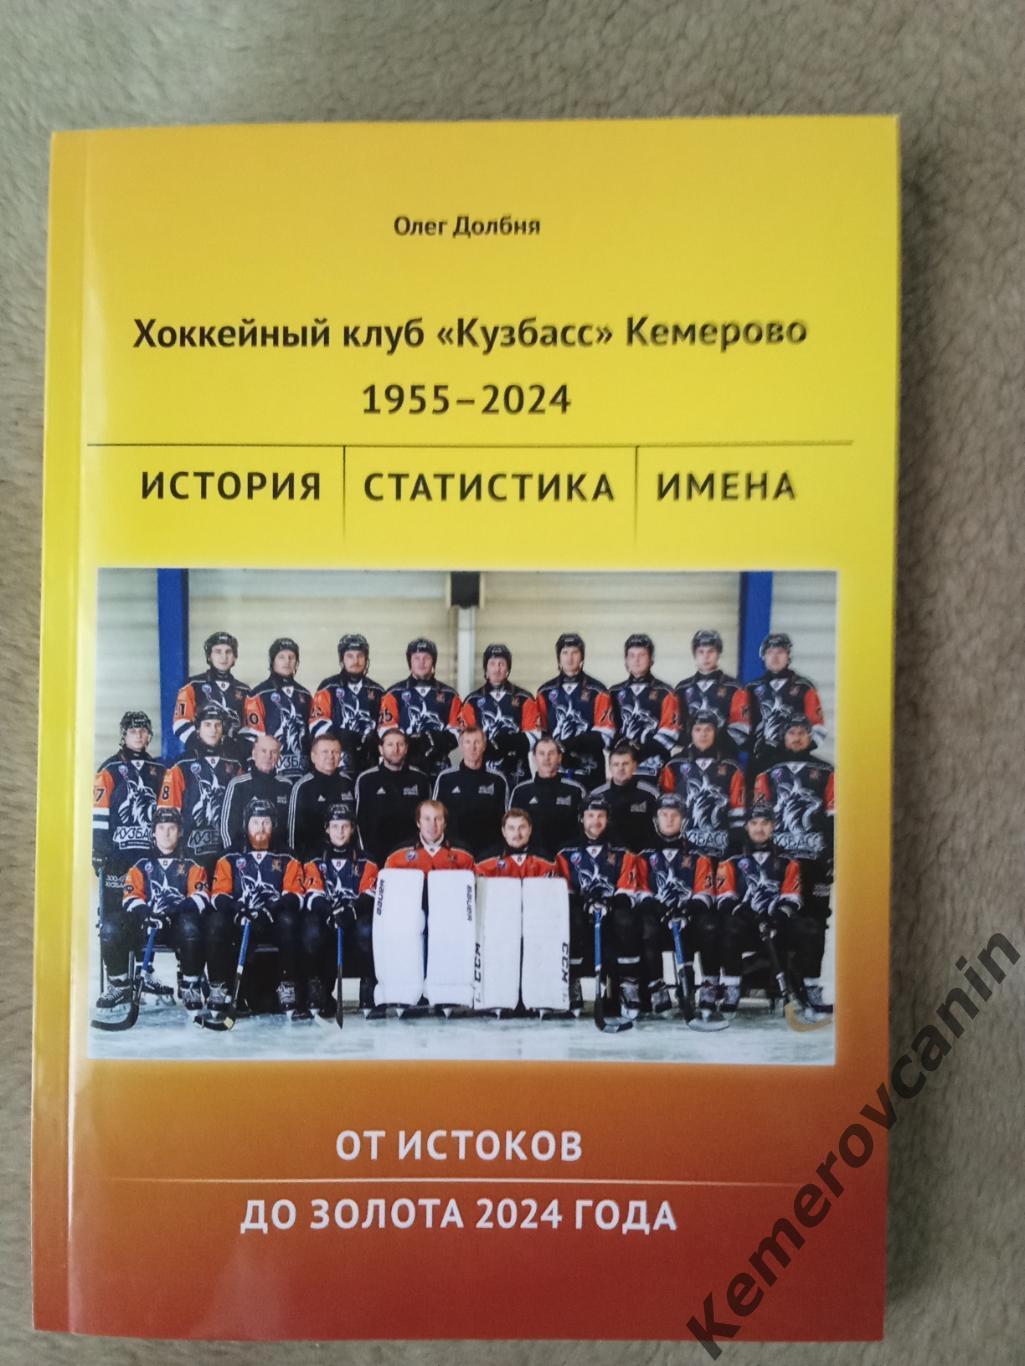 New! Хоккейный клуб Кузбасс Кемерово 1955-2024. От истоков до золота 2024 года.